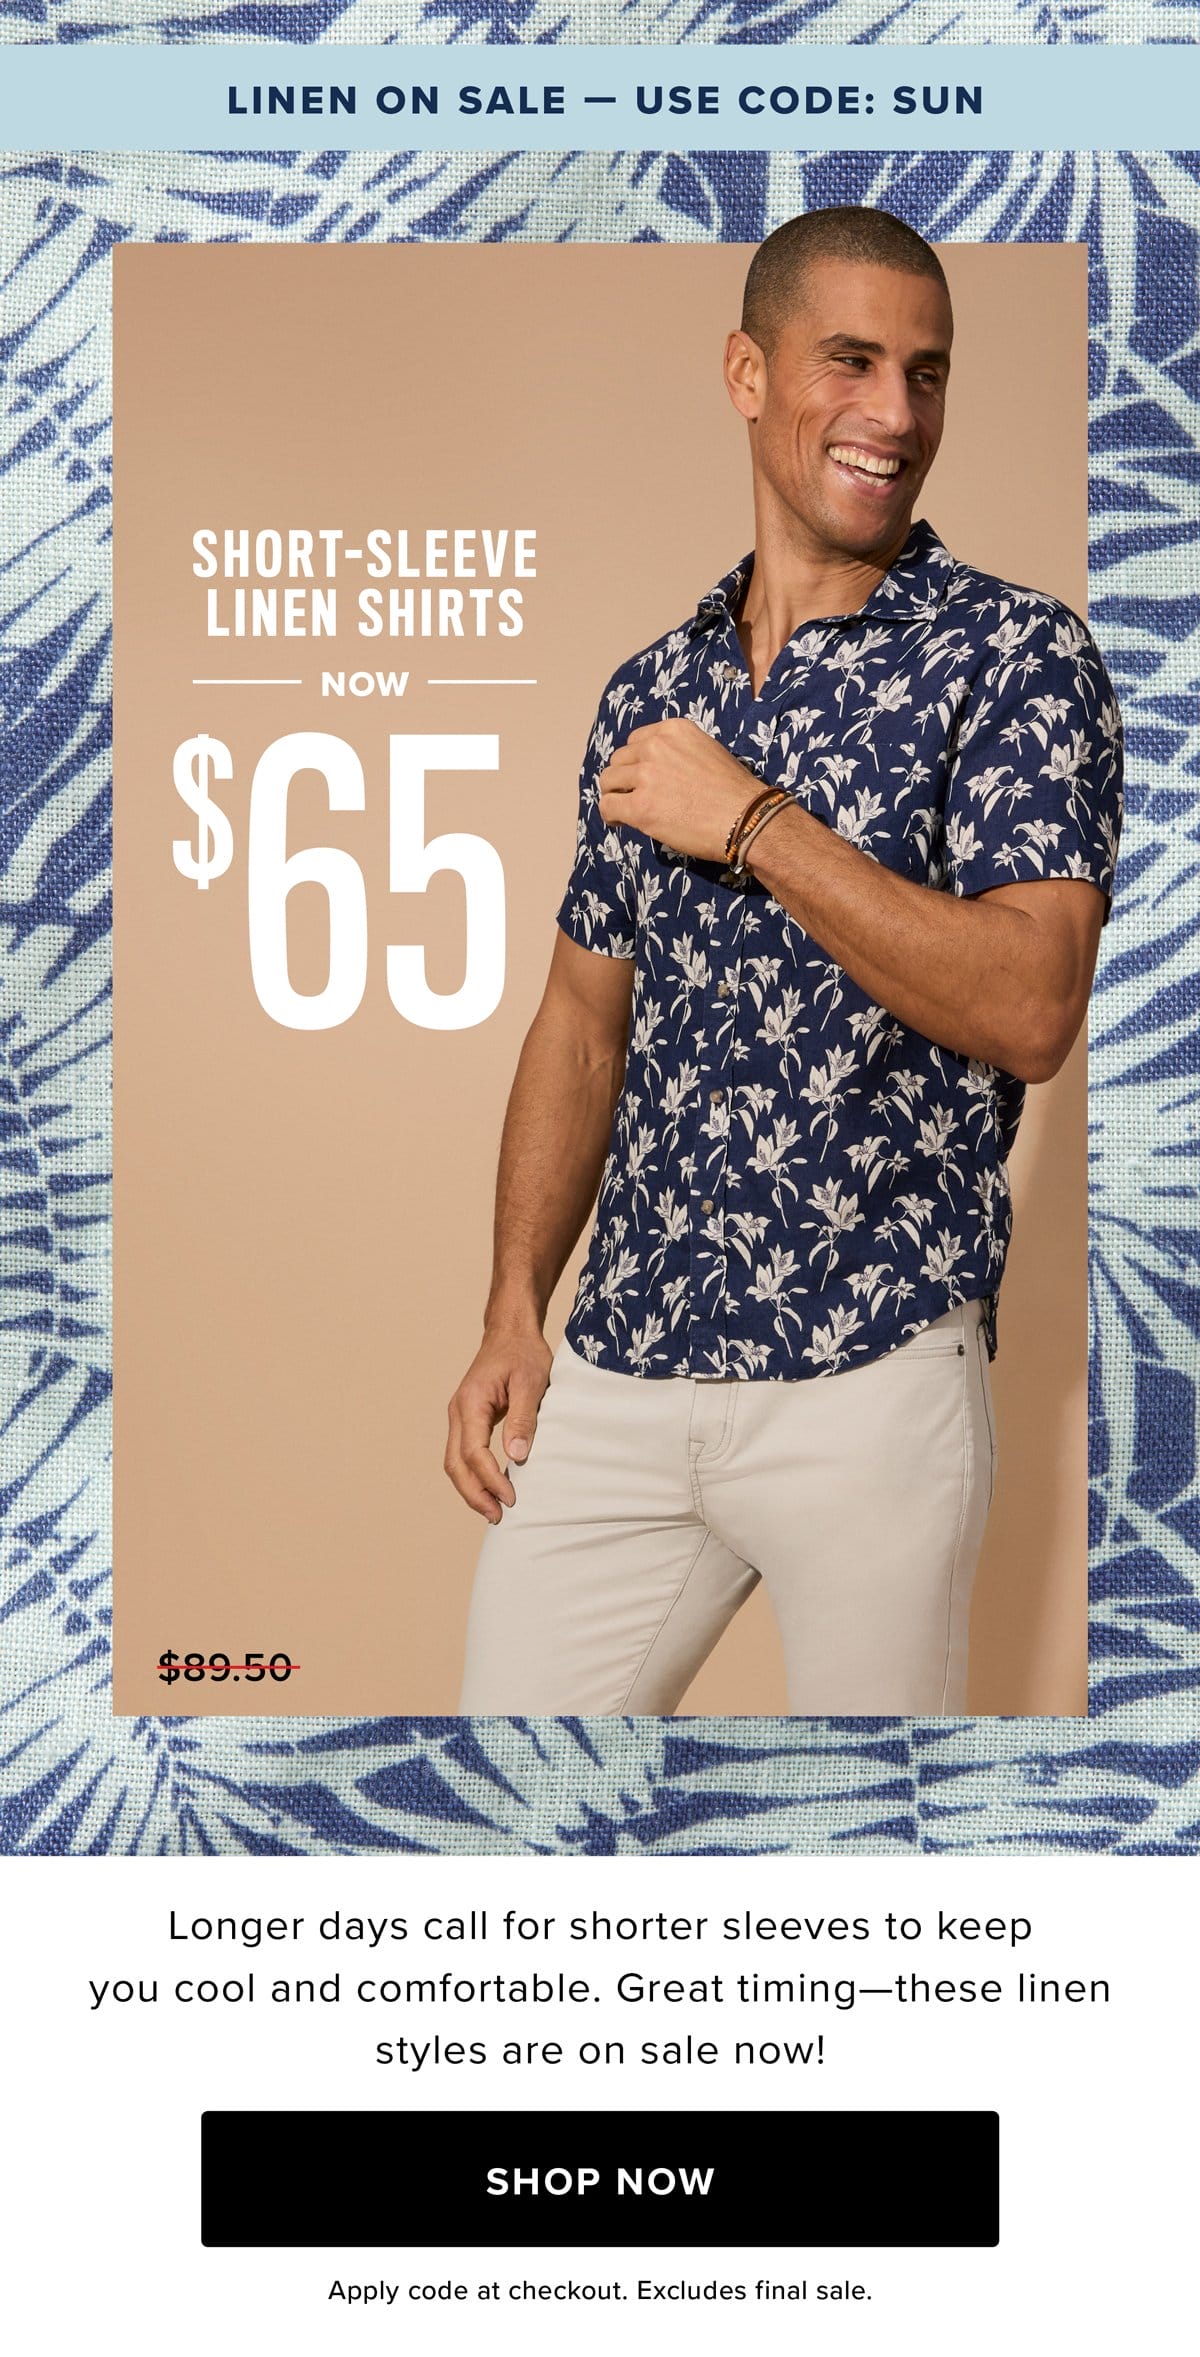 Shop Short-Sleeve Linen Shirts Now \\$65